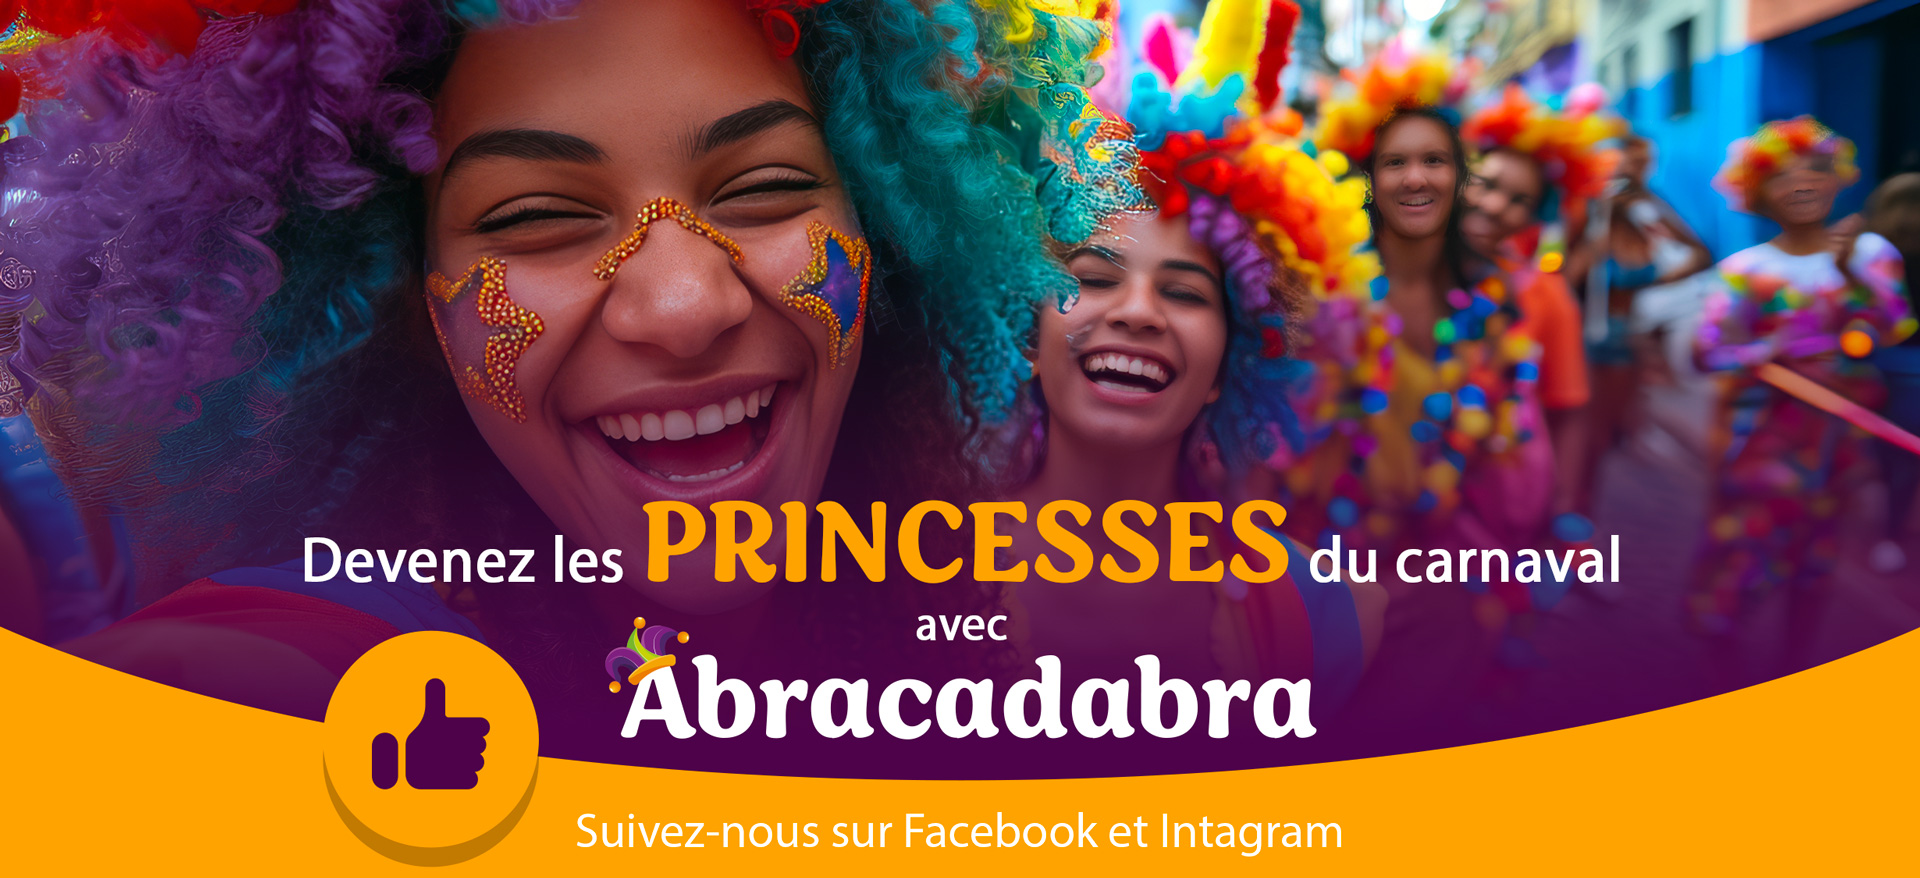 Abracadabra : Devenez les princesses du Carnaval avec Abracadabra